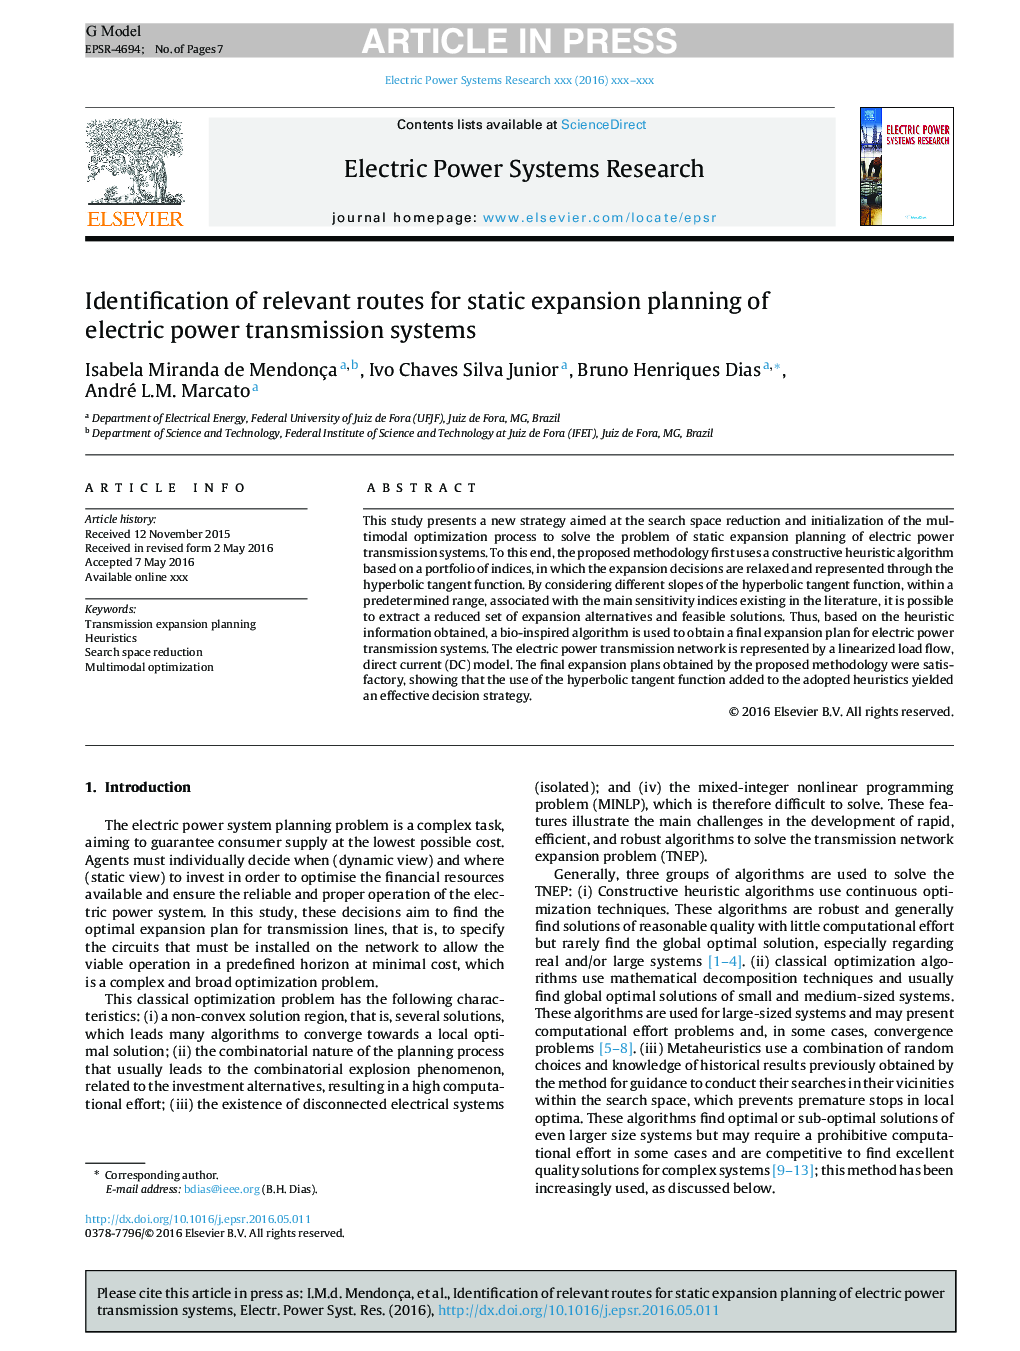 شناسایی راه های مربوط به برنامه ریزی توسعه استاتیک سیستم های انتقال قدرت الکتریکی 